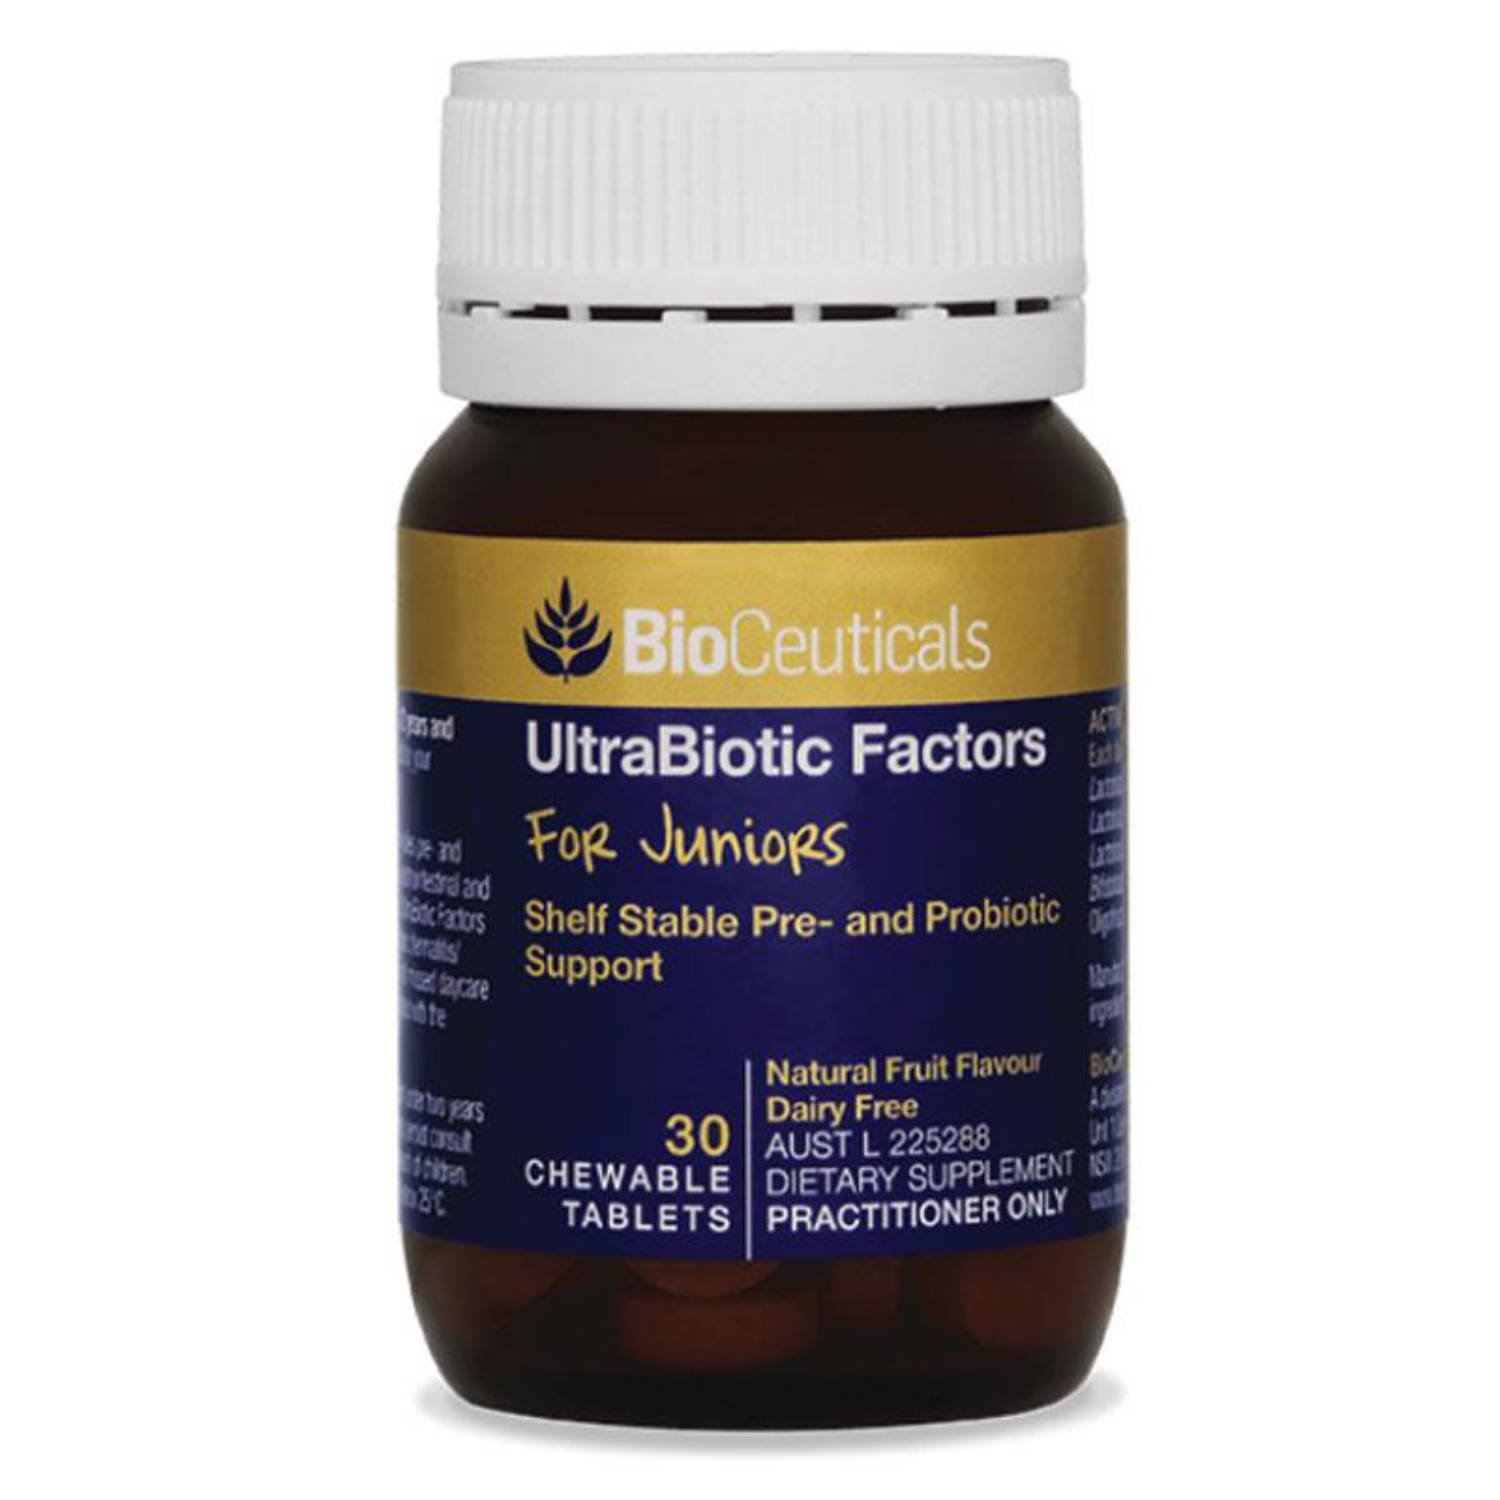 Ultrabiotic Factors for Juniors.jpg